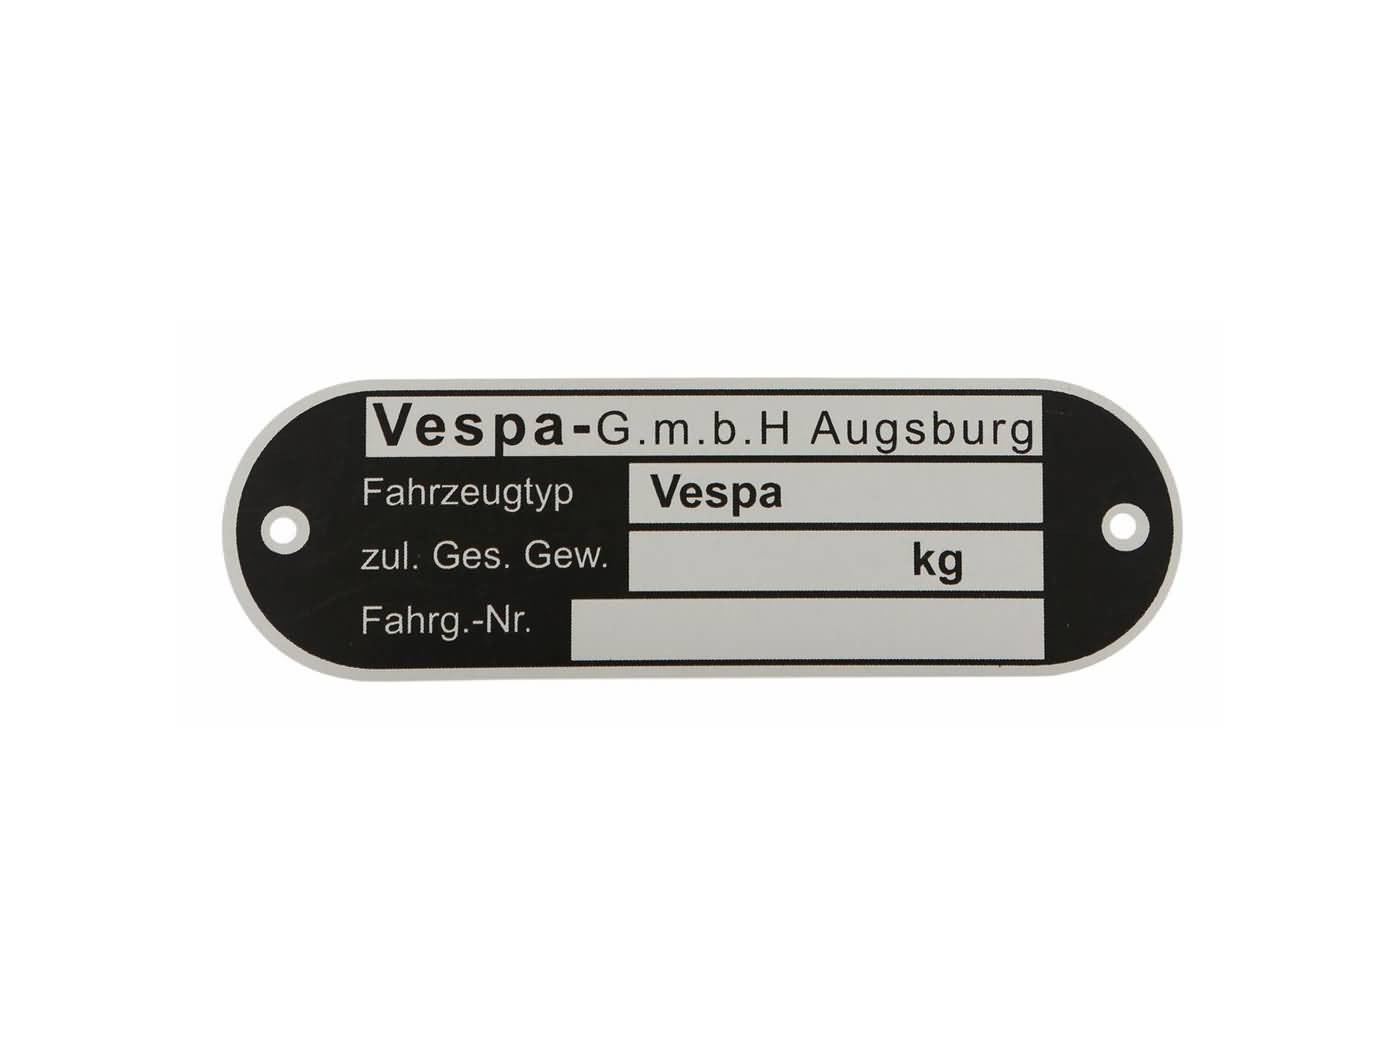 Vespa GmbH Augsburg típusjelzés a Vespa összes német modelljéhez '62-'67